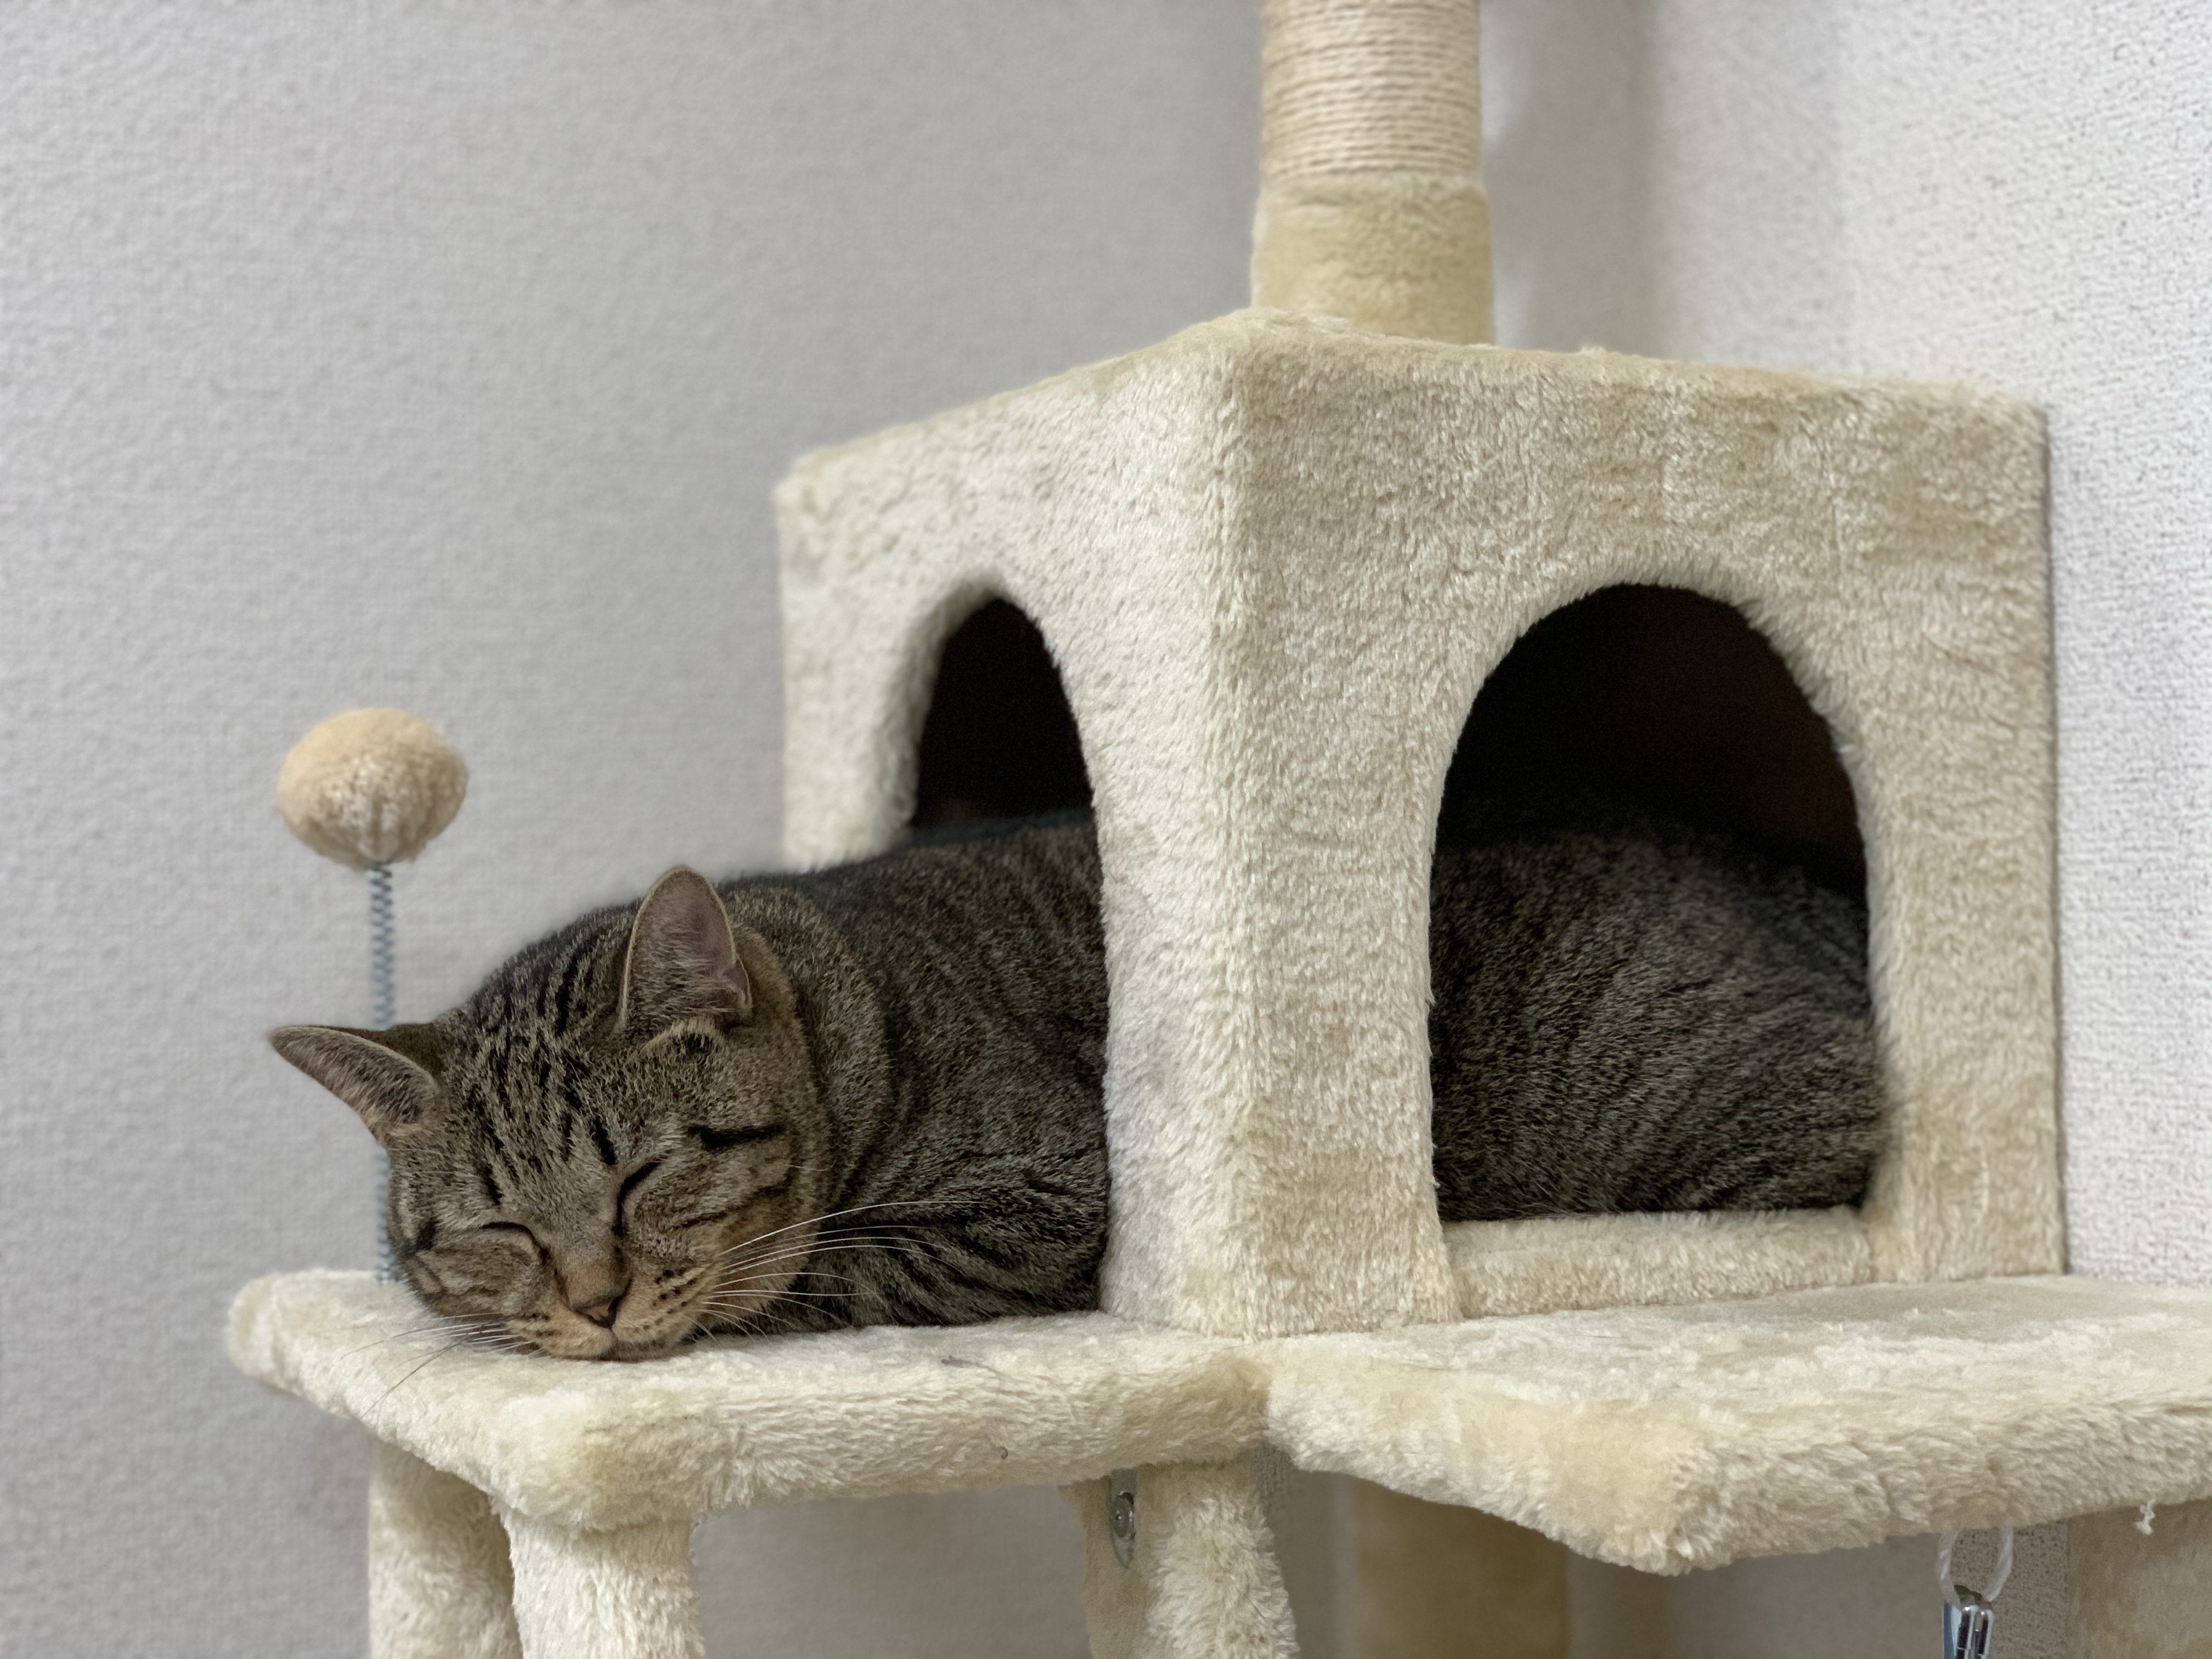 キャットタワーで眠る猫